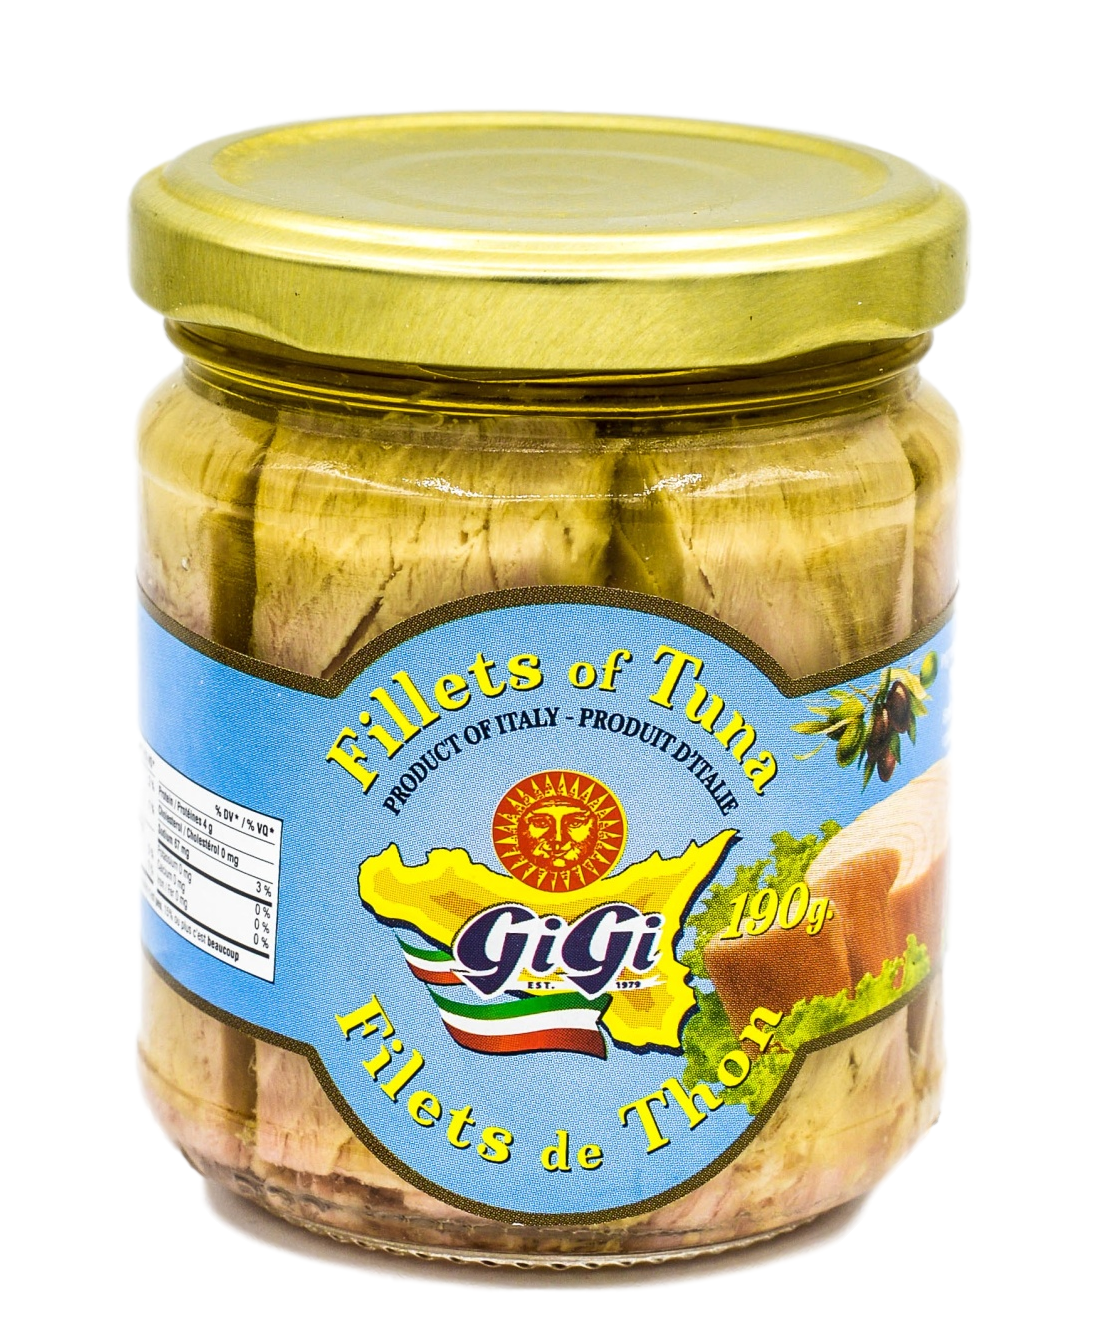 Gi Gi Fillets of Tuna 190g